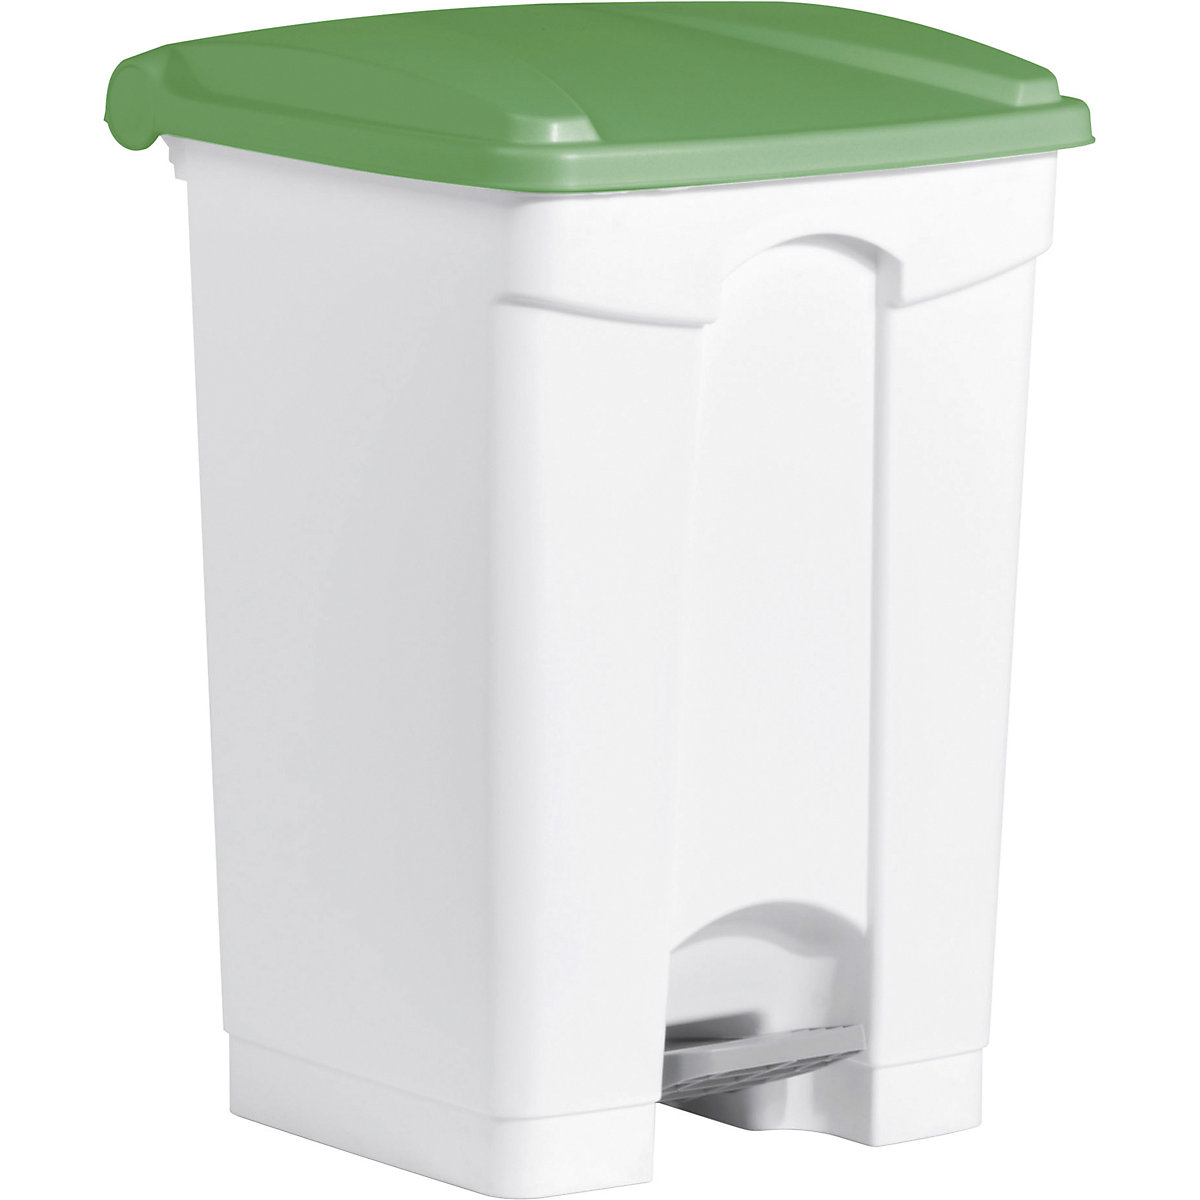 Tretabfallbehälter helit, Volumen 45 l, BxHxT 410 x 605 x 400 mm, weiß, Deckel grün